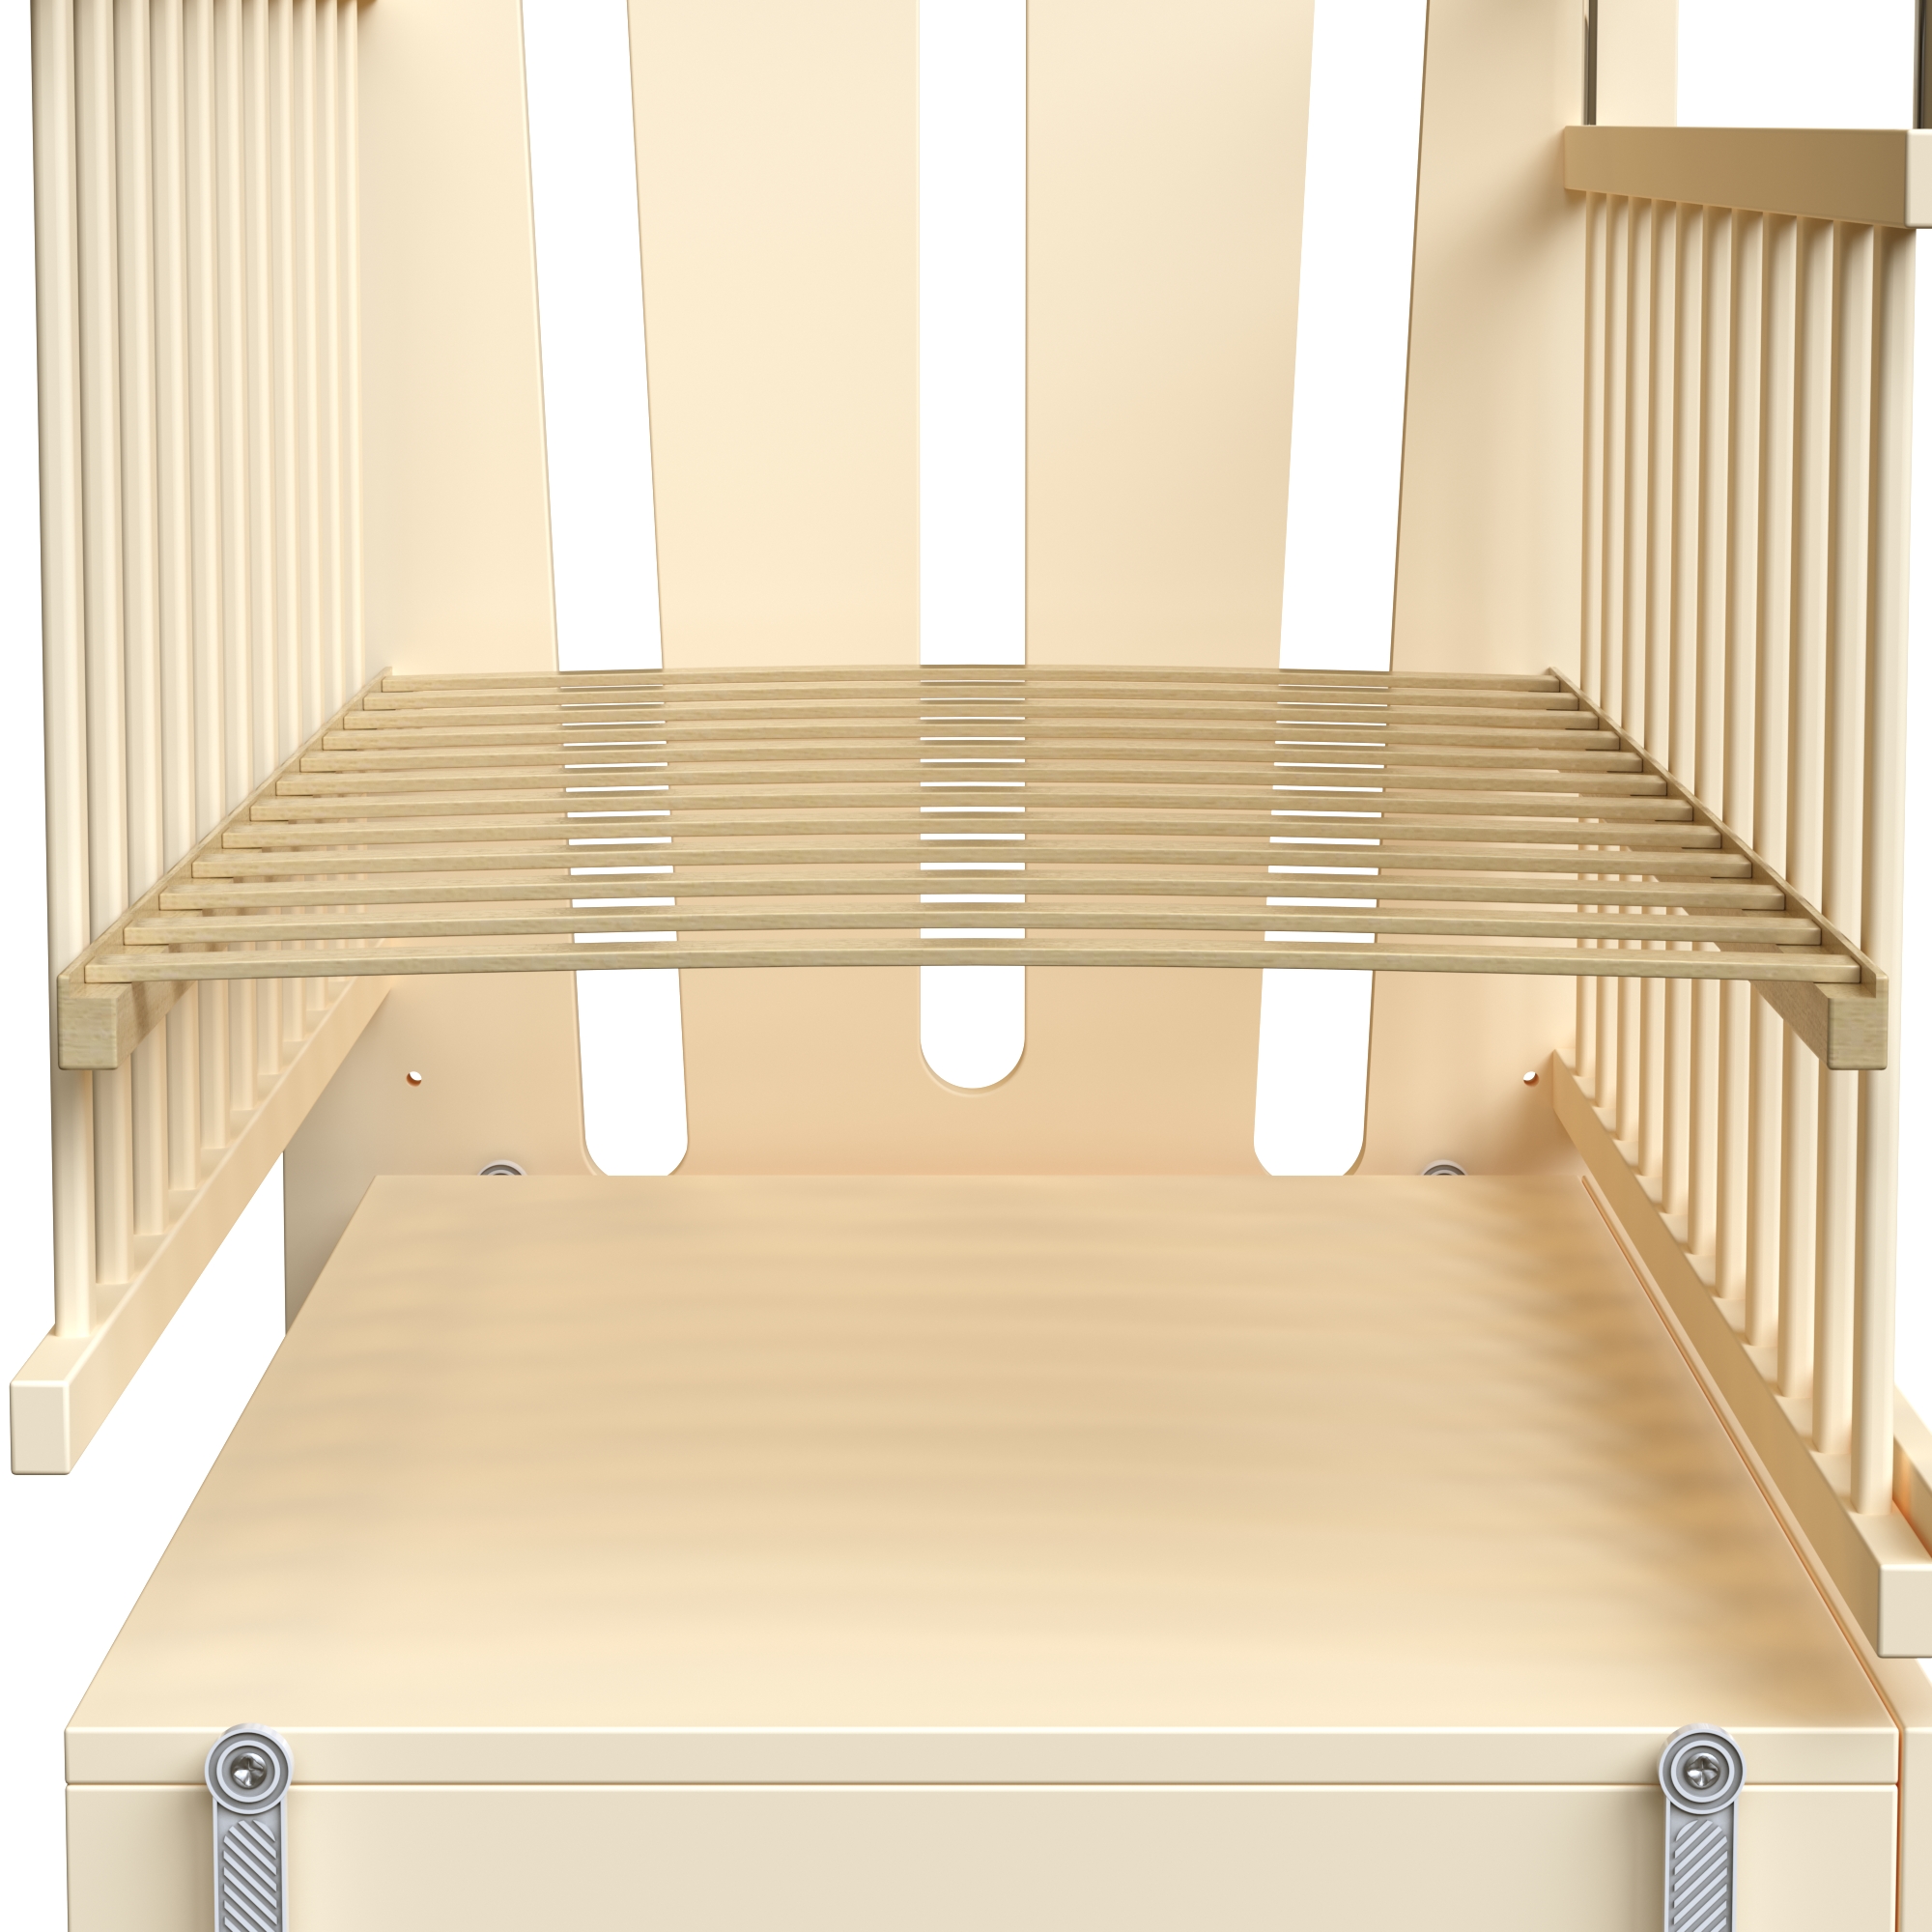 Детская кроватка ВДК Desire прямоугольная, продольный маятник (слоновая кость) - фото 5